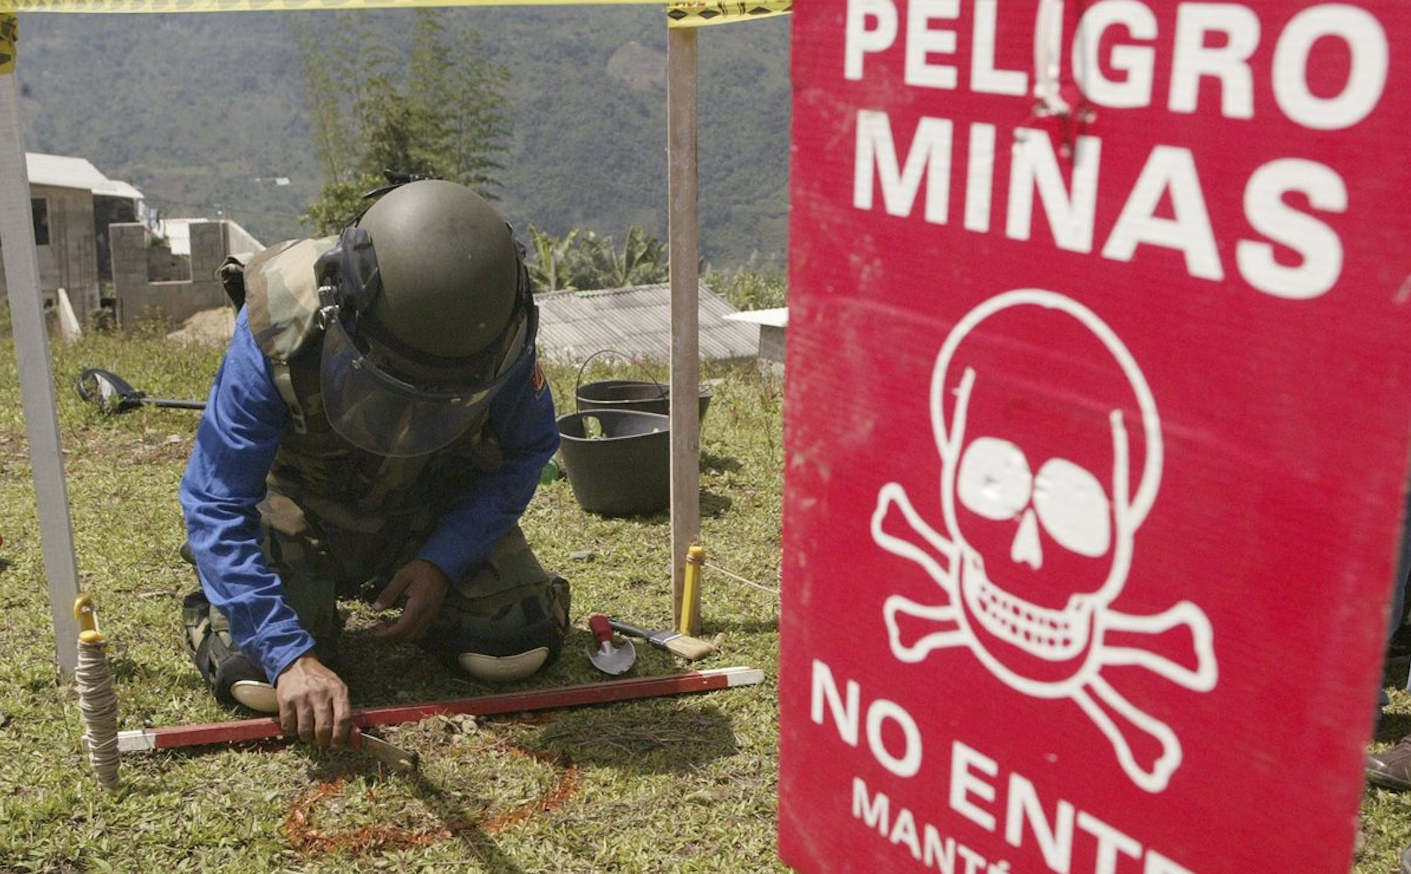 EU renuncia a usar, producir y comprar minas antipersonales